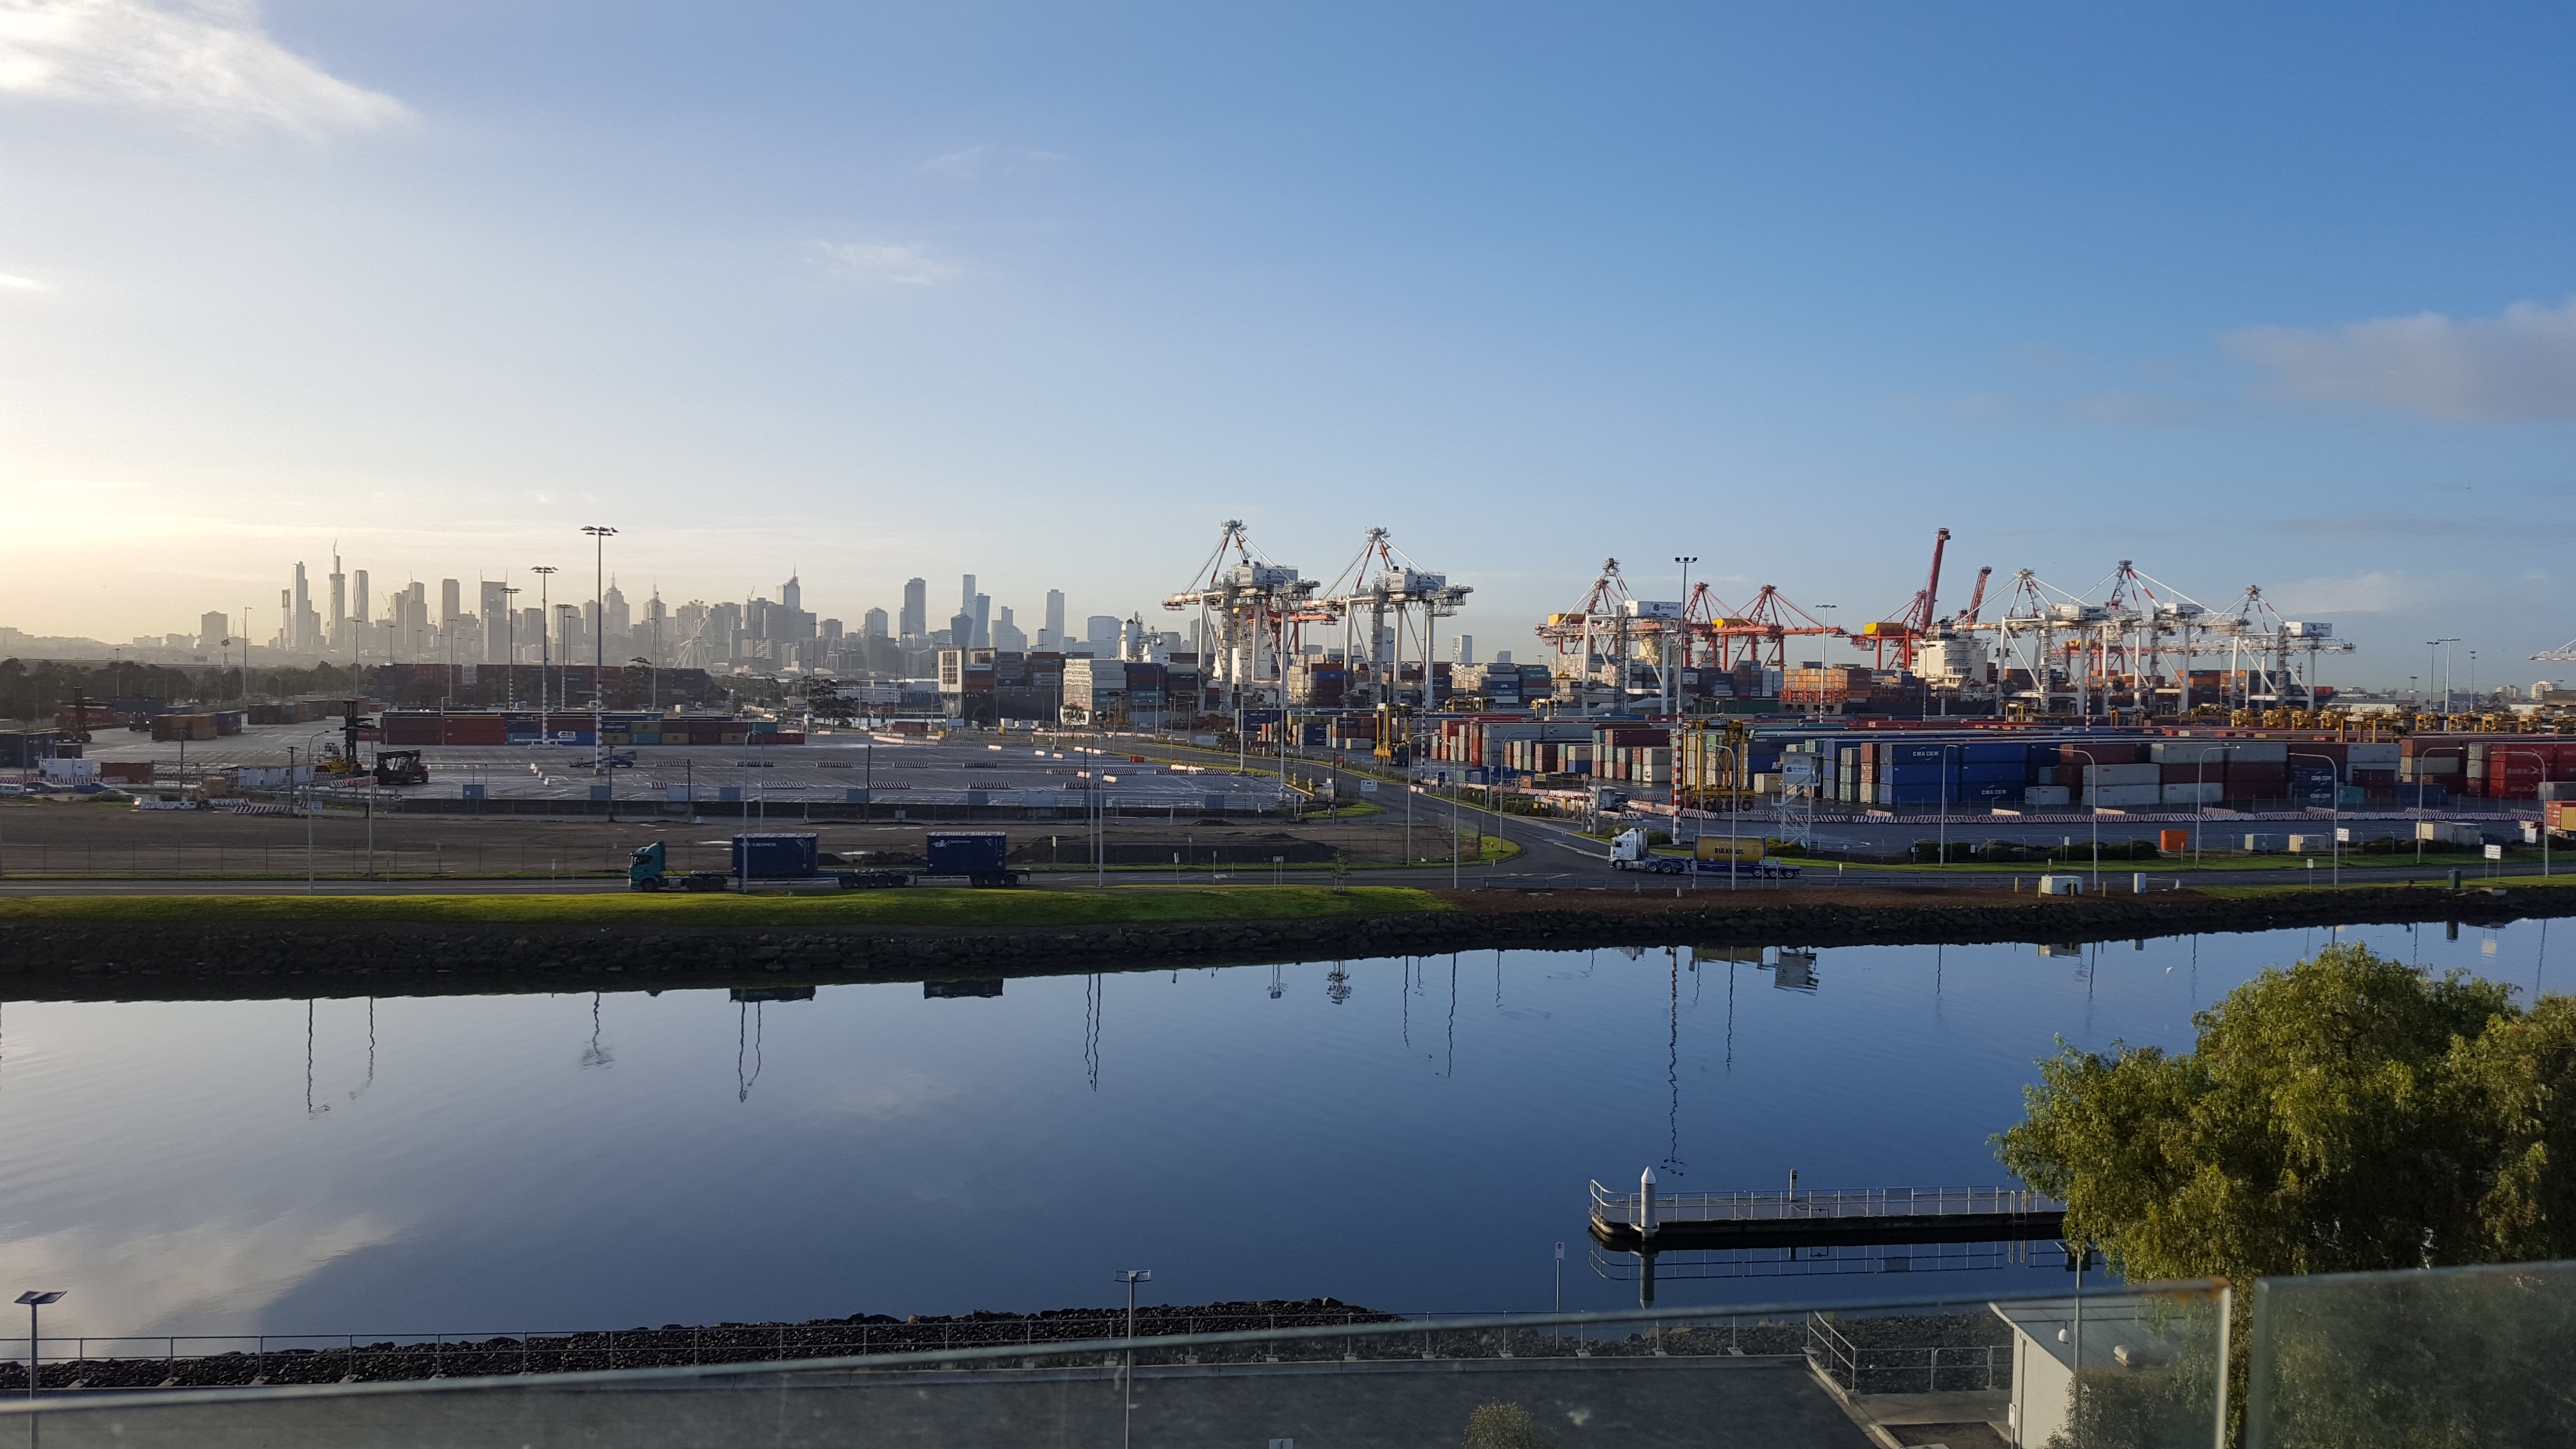 Victoria, Melbourne, Australia, Container ship, Cranes (machine), Trucks, River Wallpaper